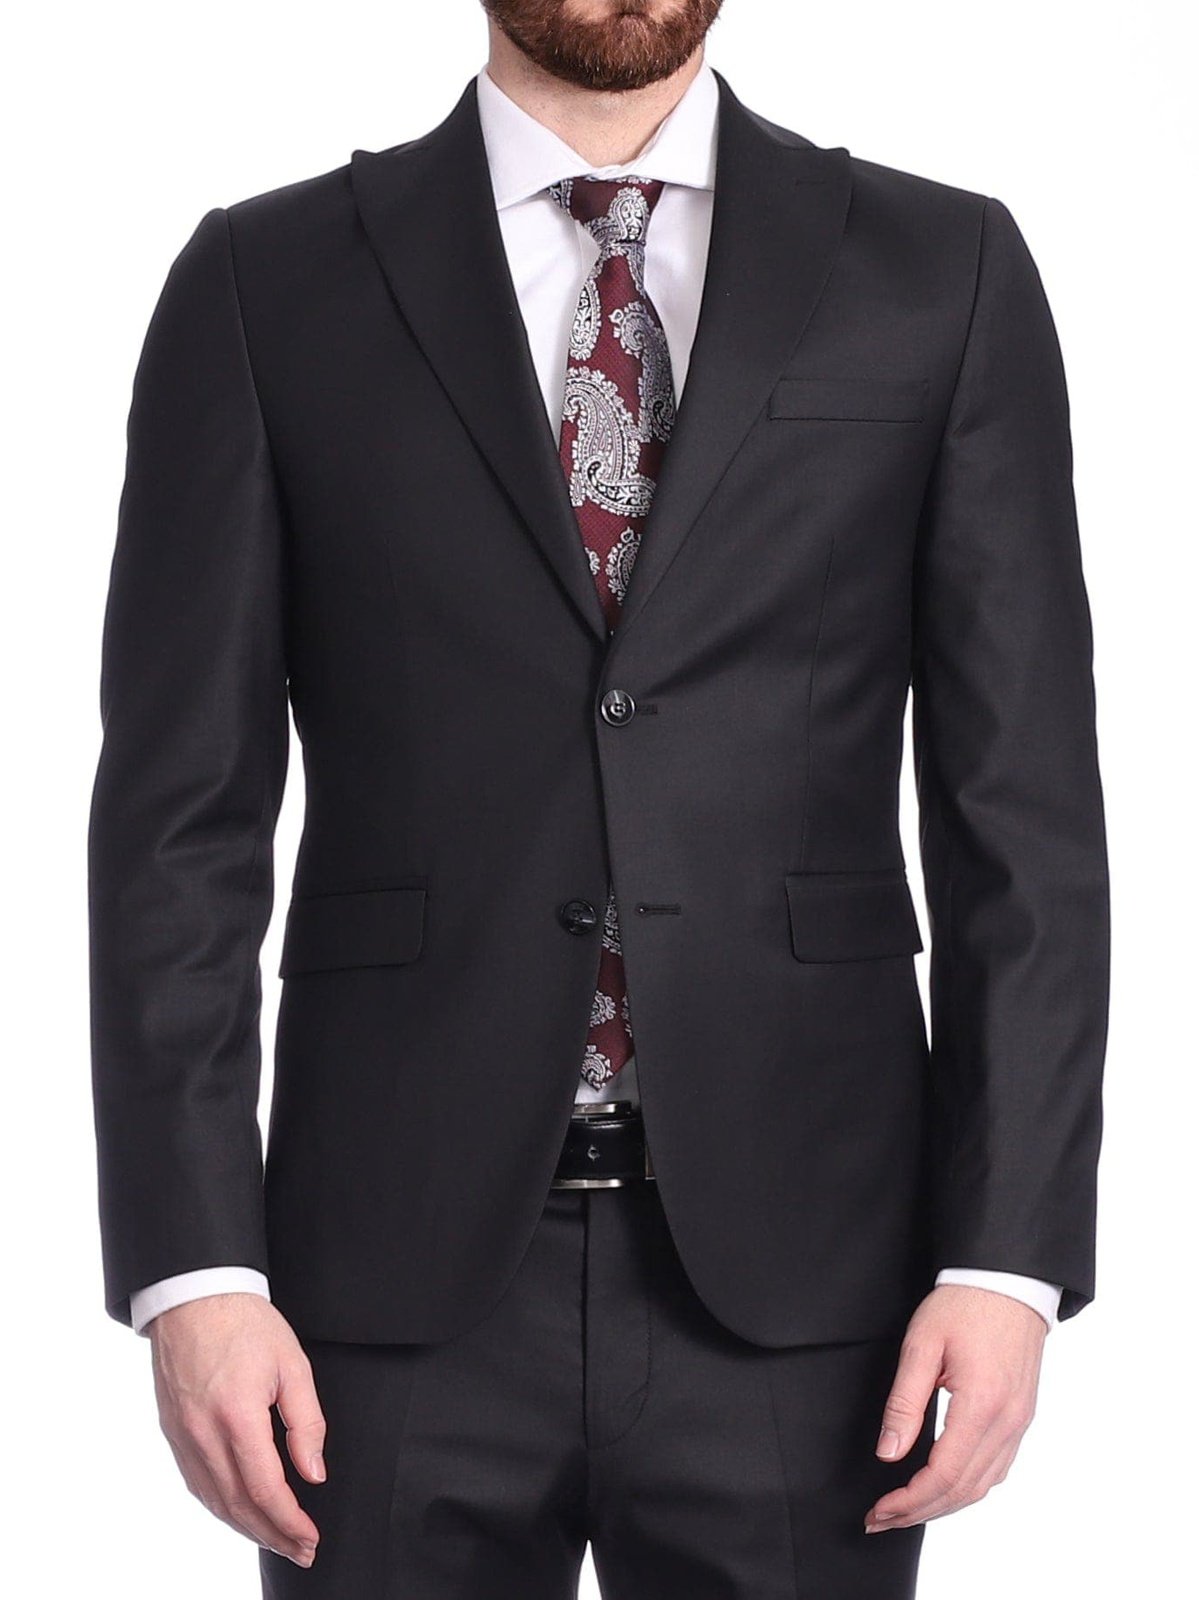 Carducci SUITS Carducci Mens Solid Black Wool Blend Slim Fit Suit With Peak Lapels